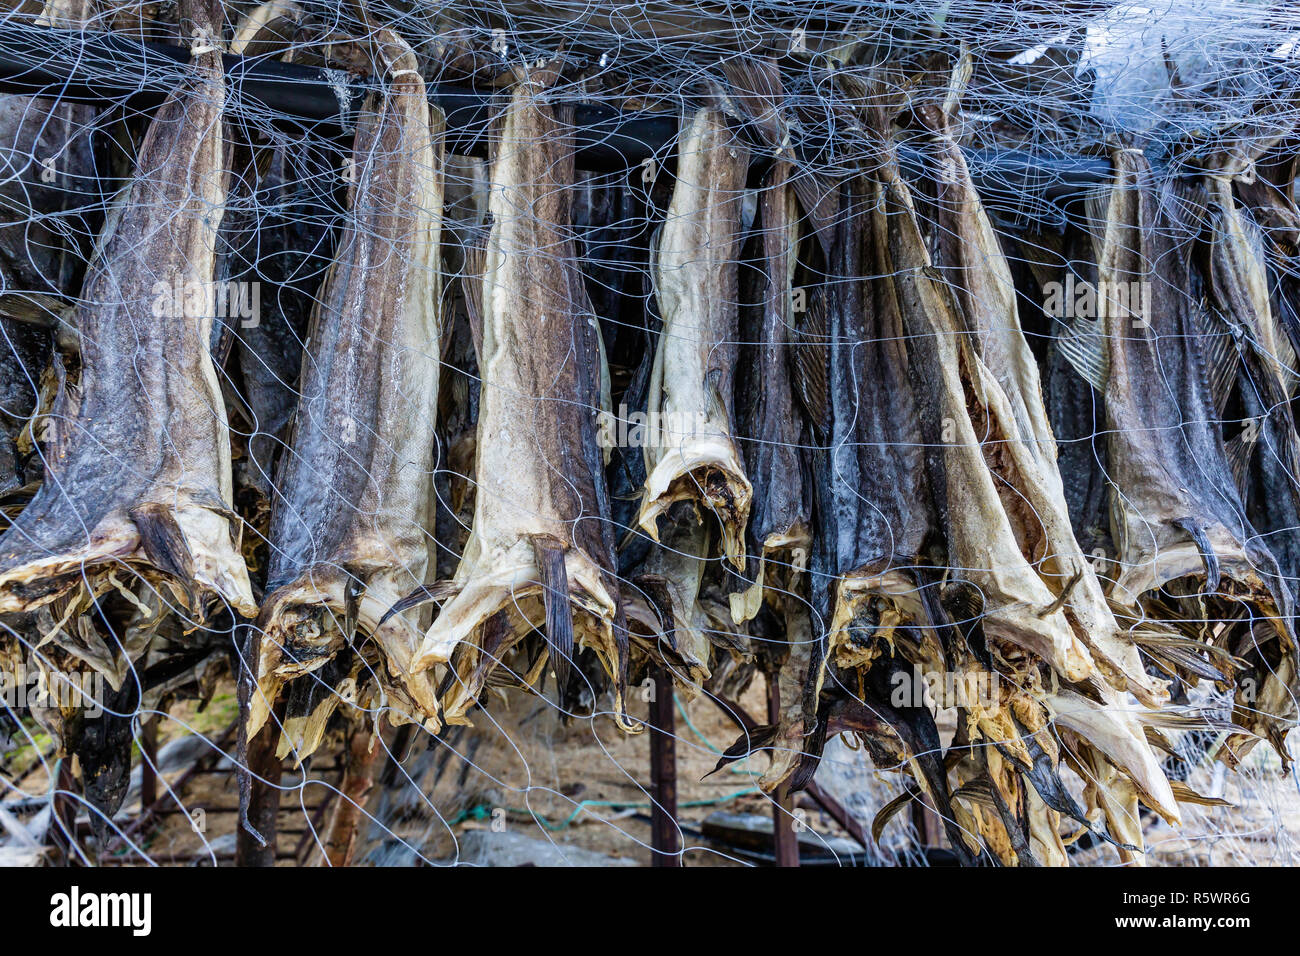 Méthode Sami pour sécher le poisson dans Hellmebotyn, Tysfjord, la Norvège. Banque D'Images